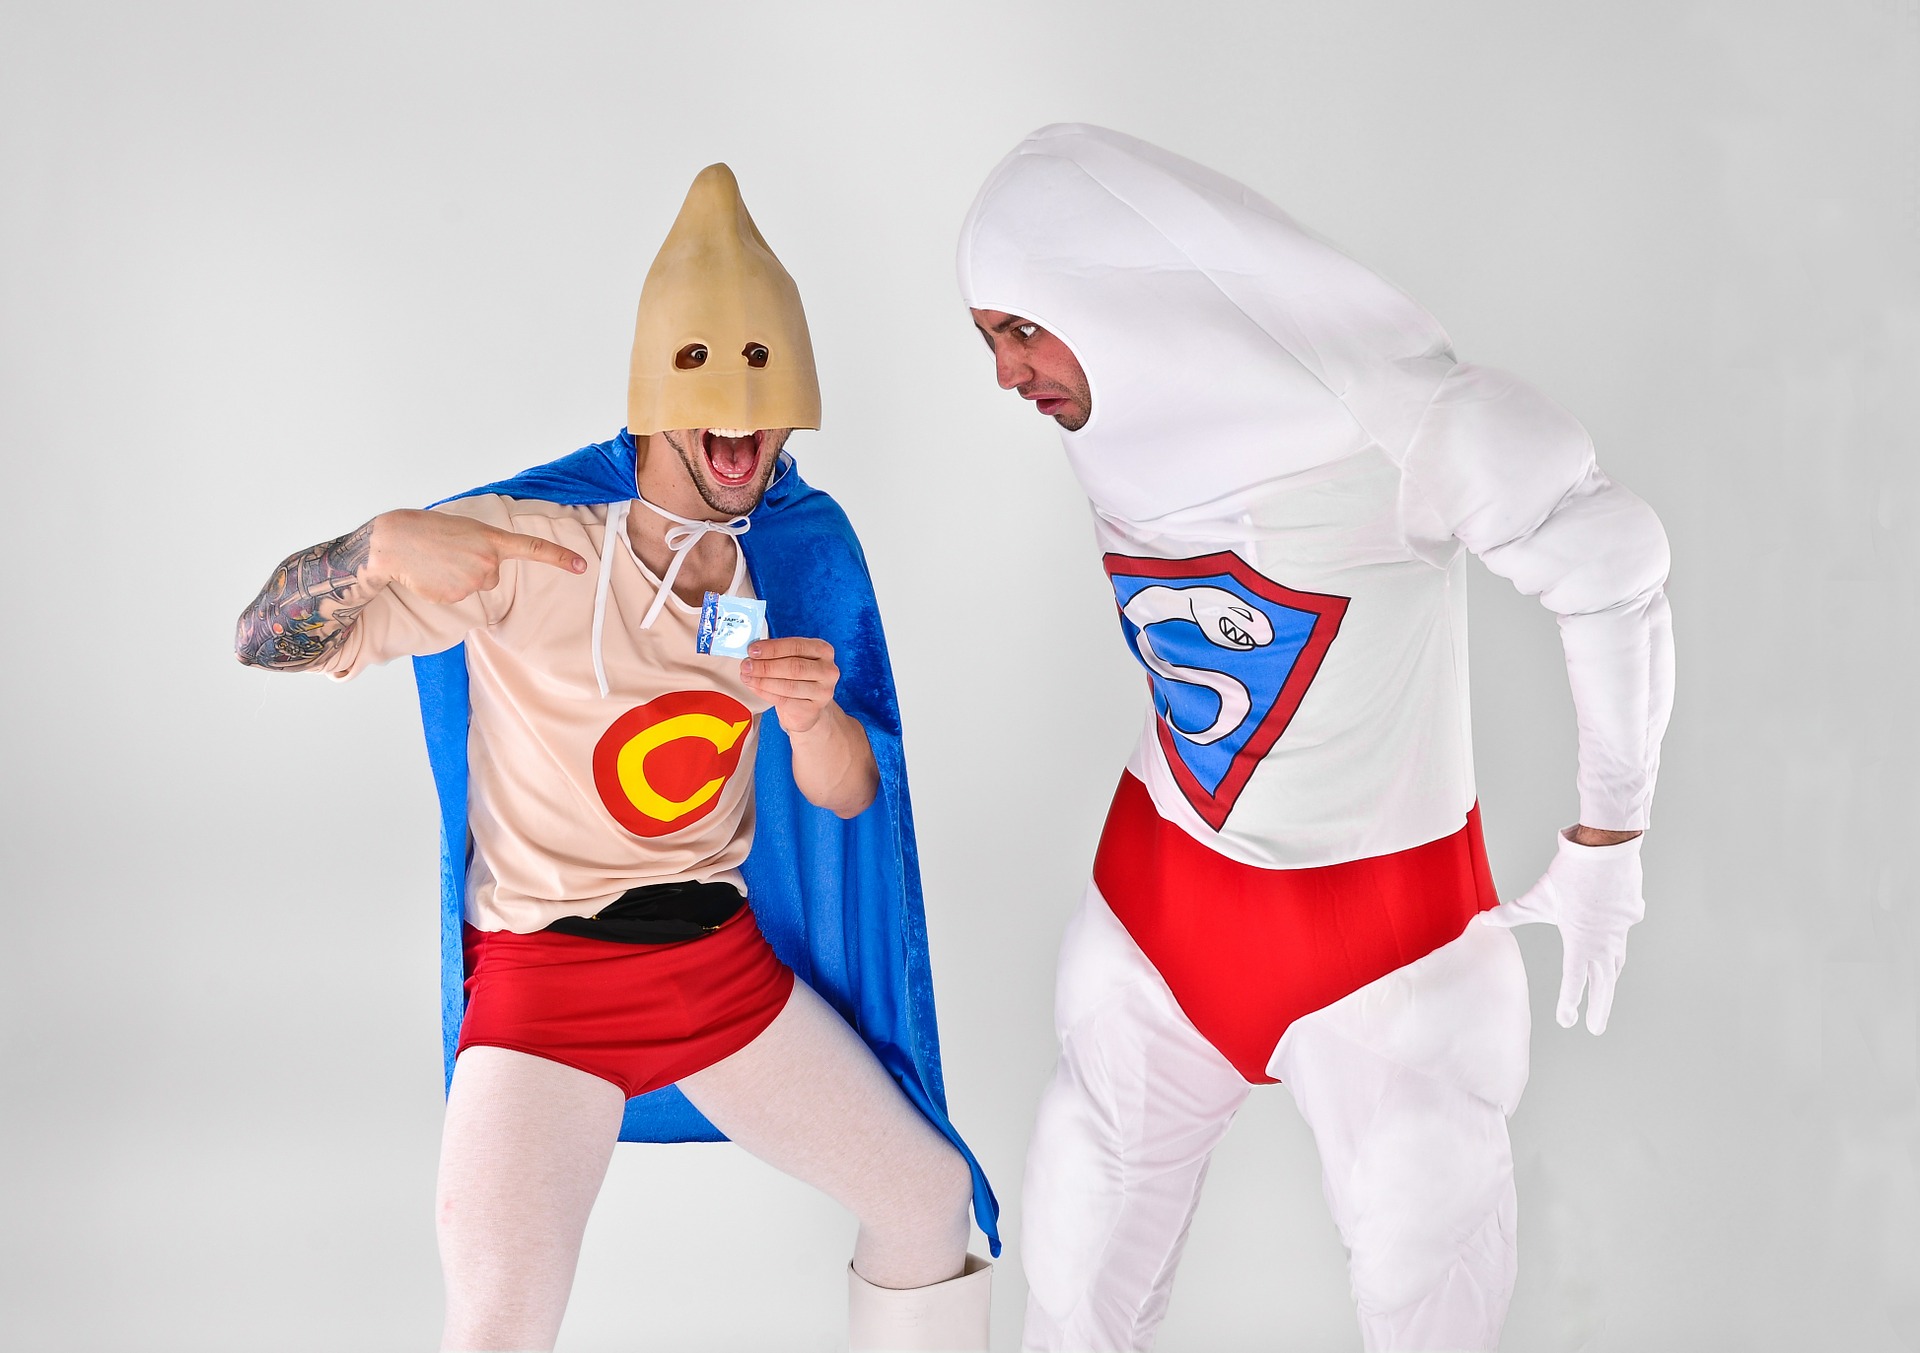 Men in superhero costumes as condoms